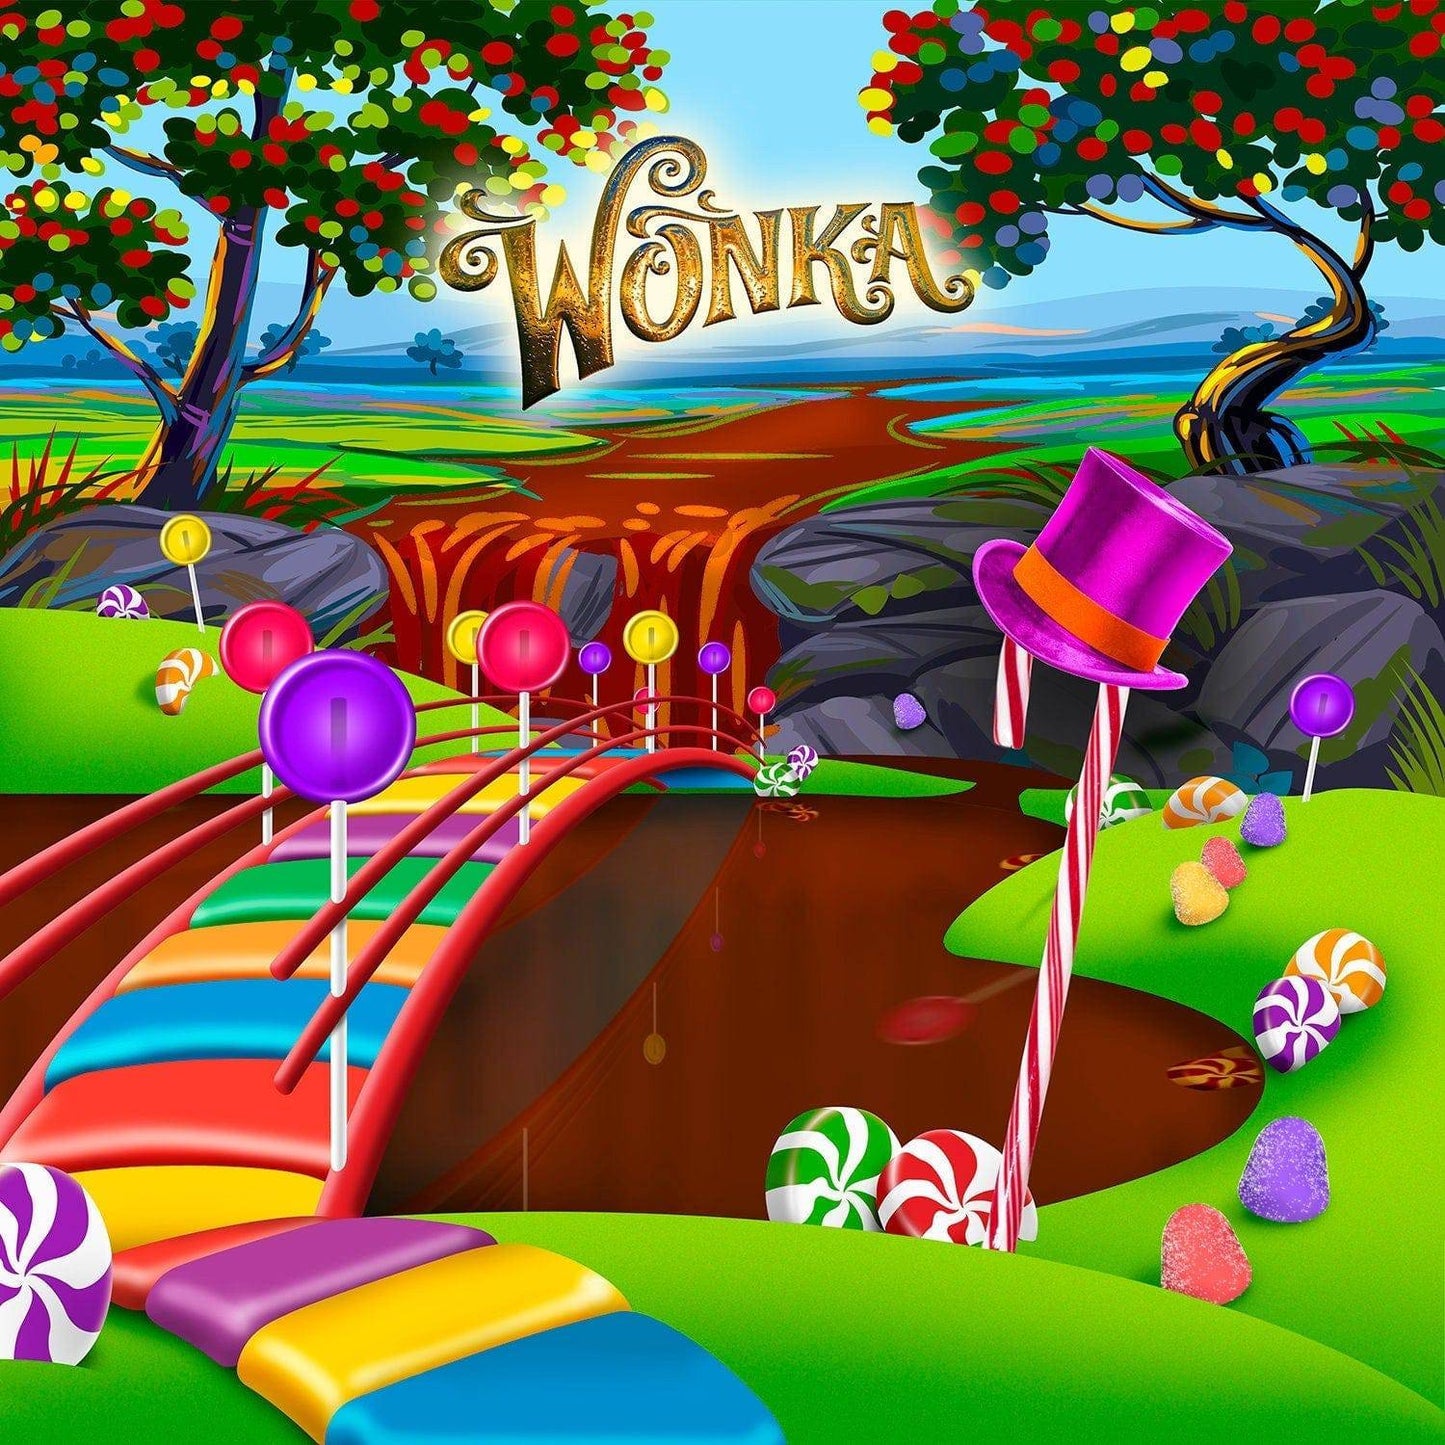 Wonka Candyland Backdrop Photo Backdrop, Backgrounds or Banners - Basic 10  x 8  